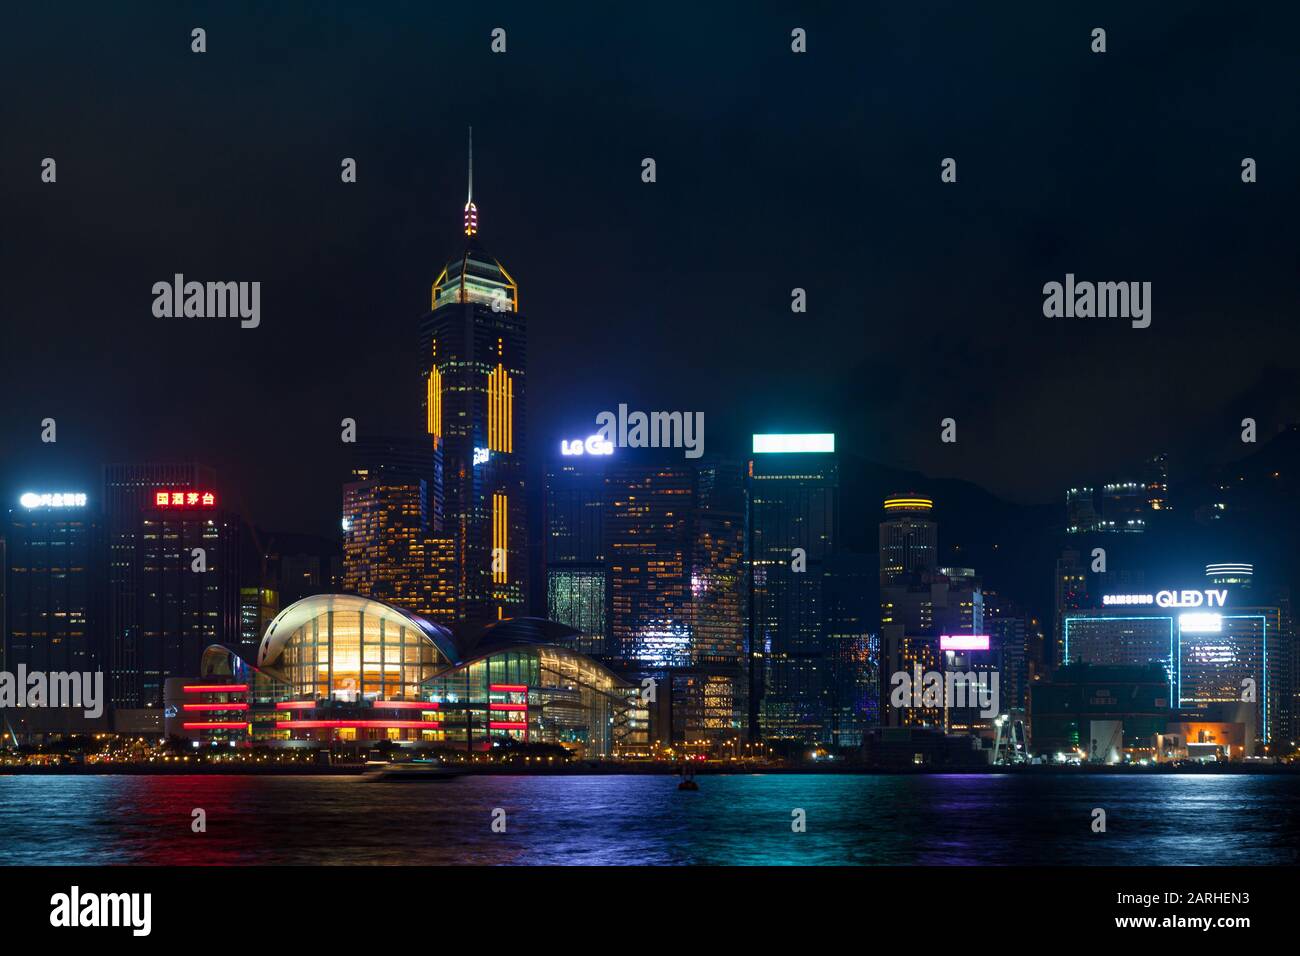 Hong Kong - July 20, 2017: Hong Kong central district at night, illuminated skyscrapers on the coast Stock Photo